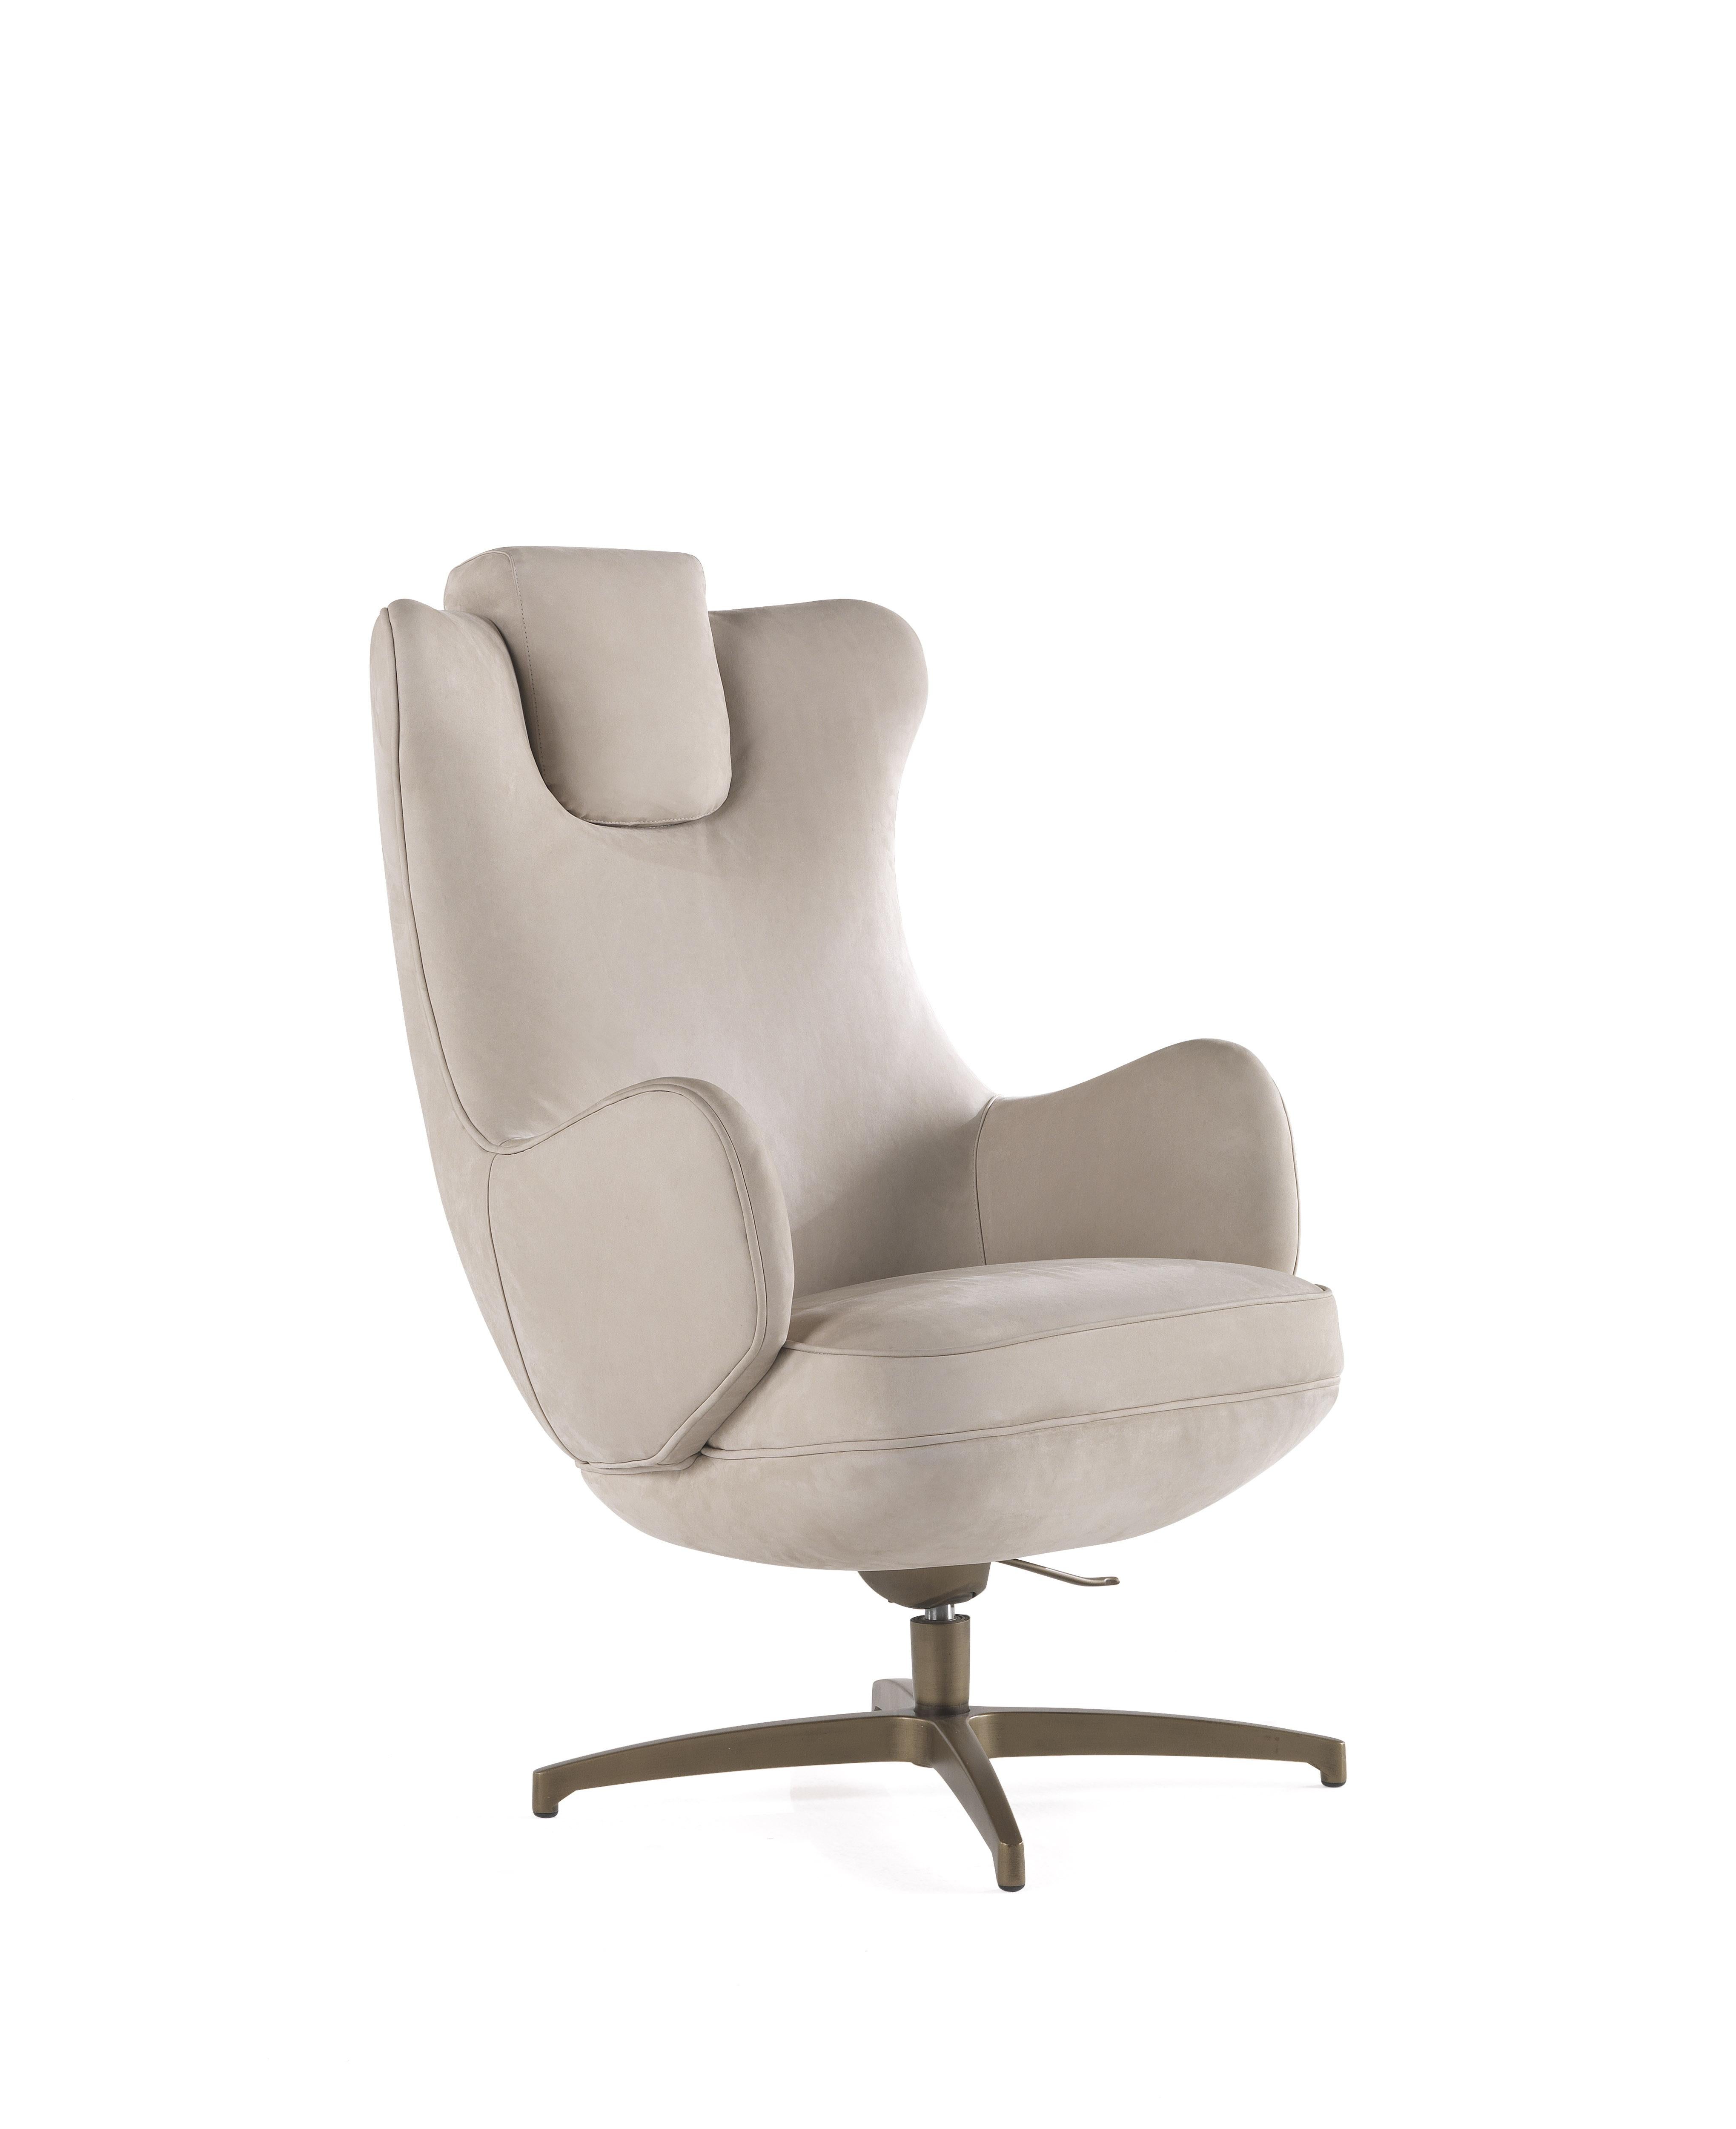 Réinterprétation originale du fauteuil de bureau ergonomique classique, le fauteuil pivotant Kurgan allie confort et qualité des matériaux et de la fabrication. Dans la nouvelle version caractérisée par un revêtement en cuir et une base pivotante